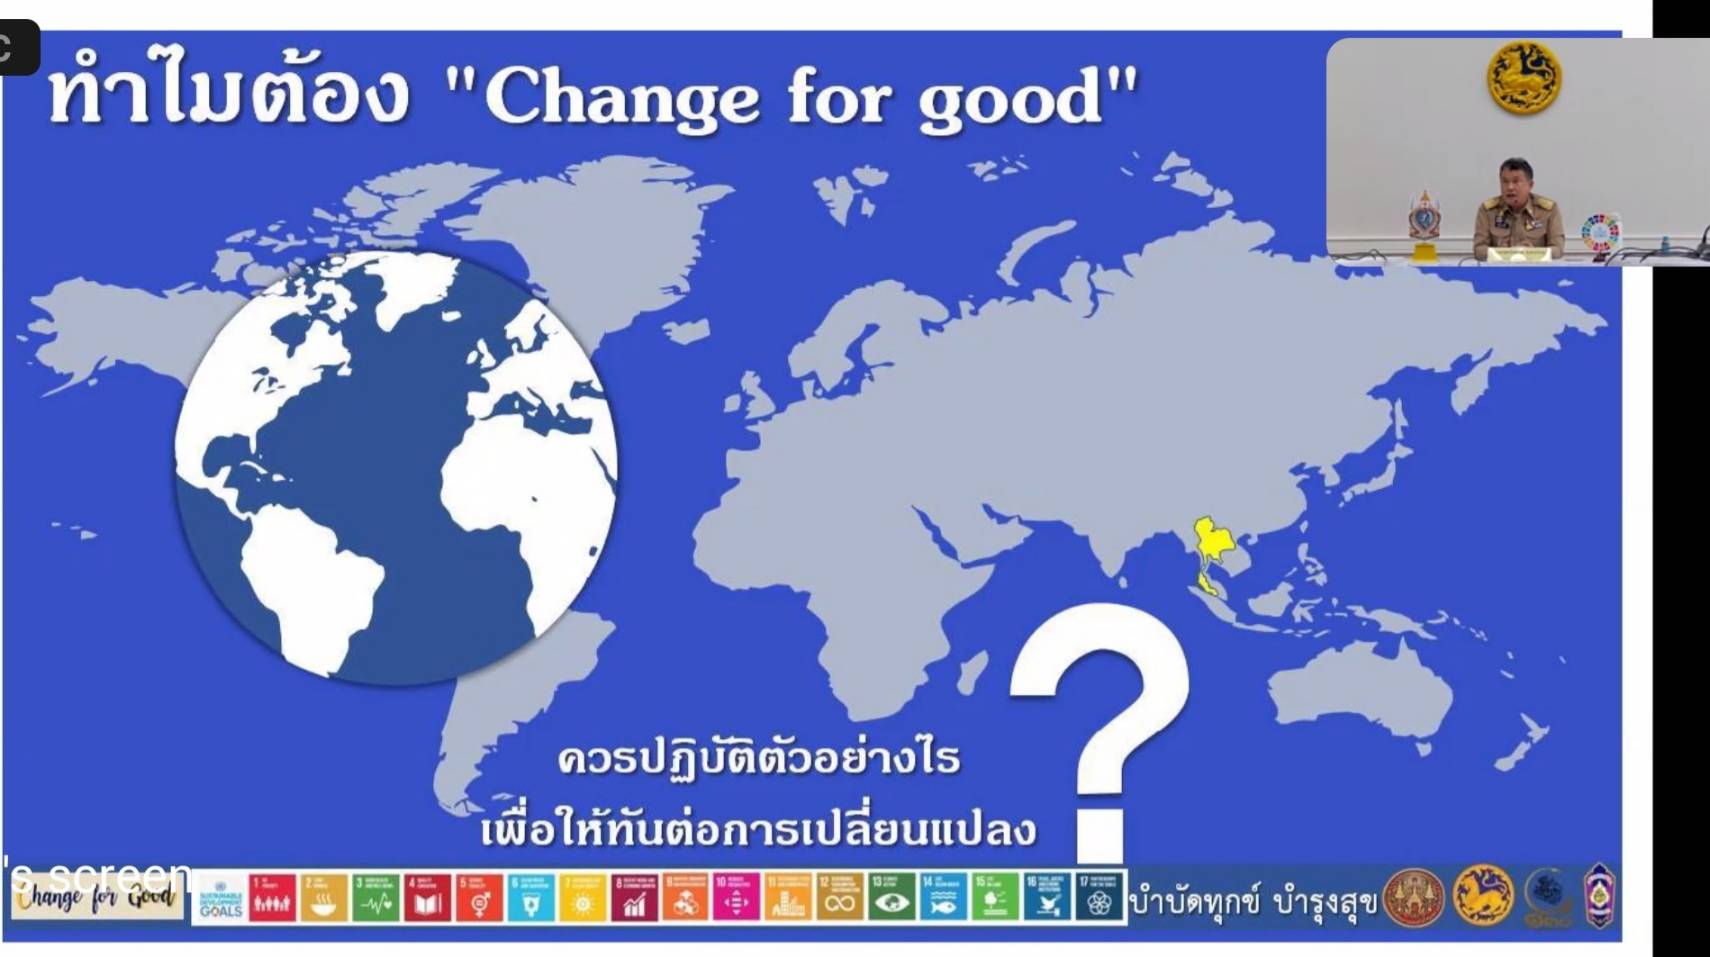  “ทำไมต้อง Change for Good” ปลัดมหาดไทย มีคำตอบ??